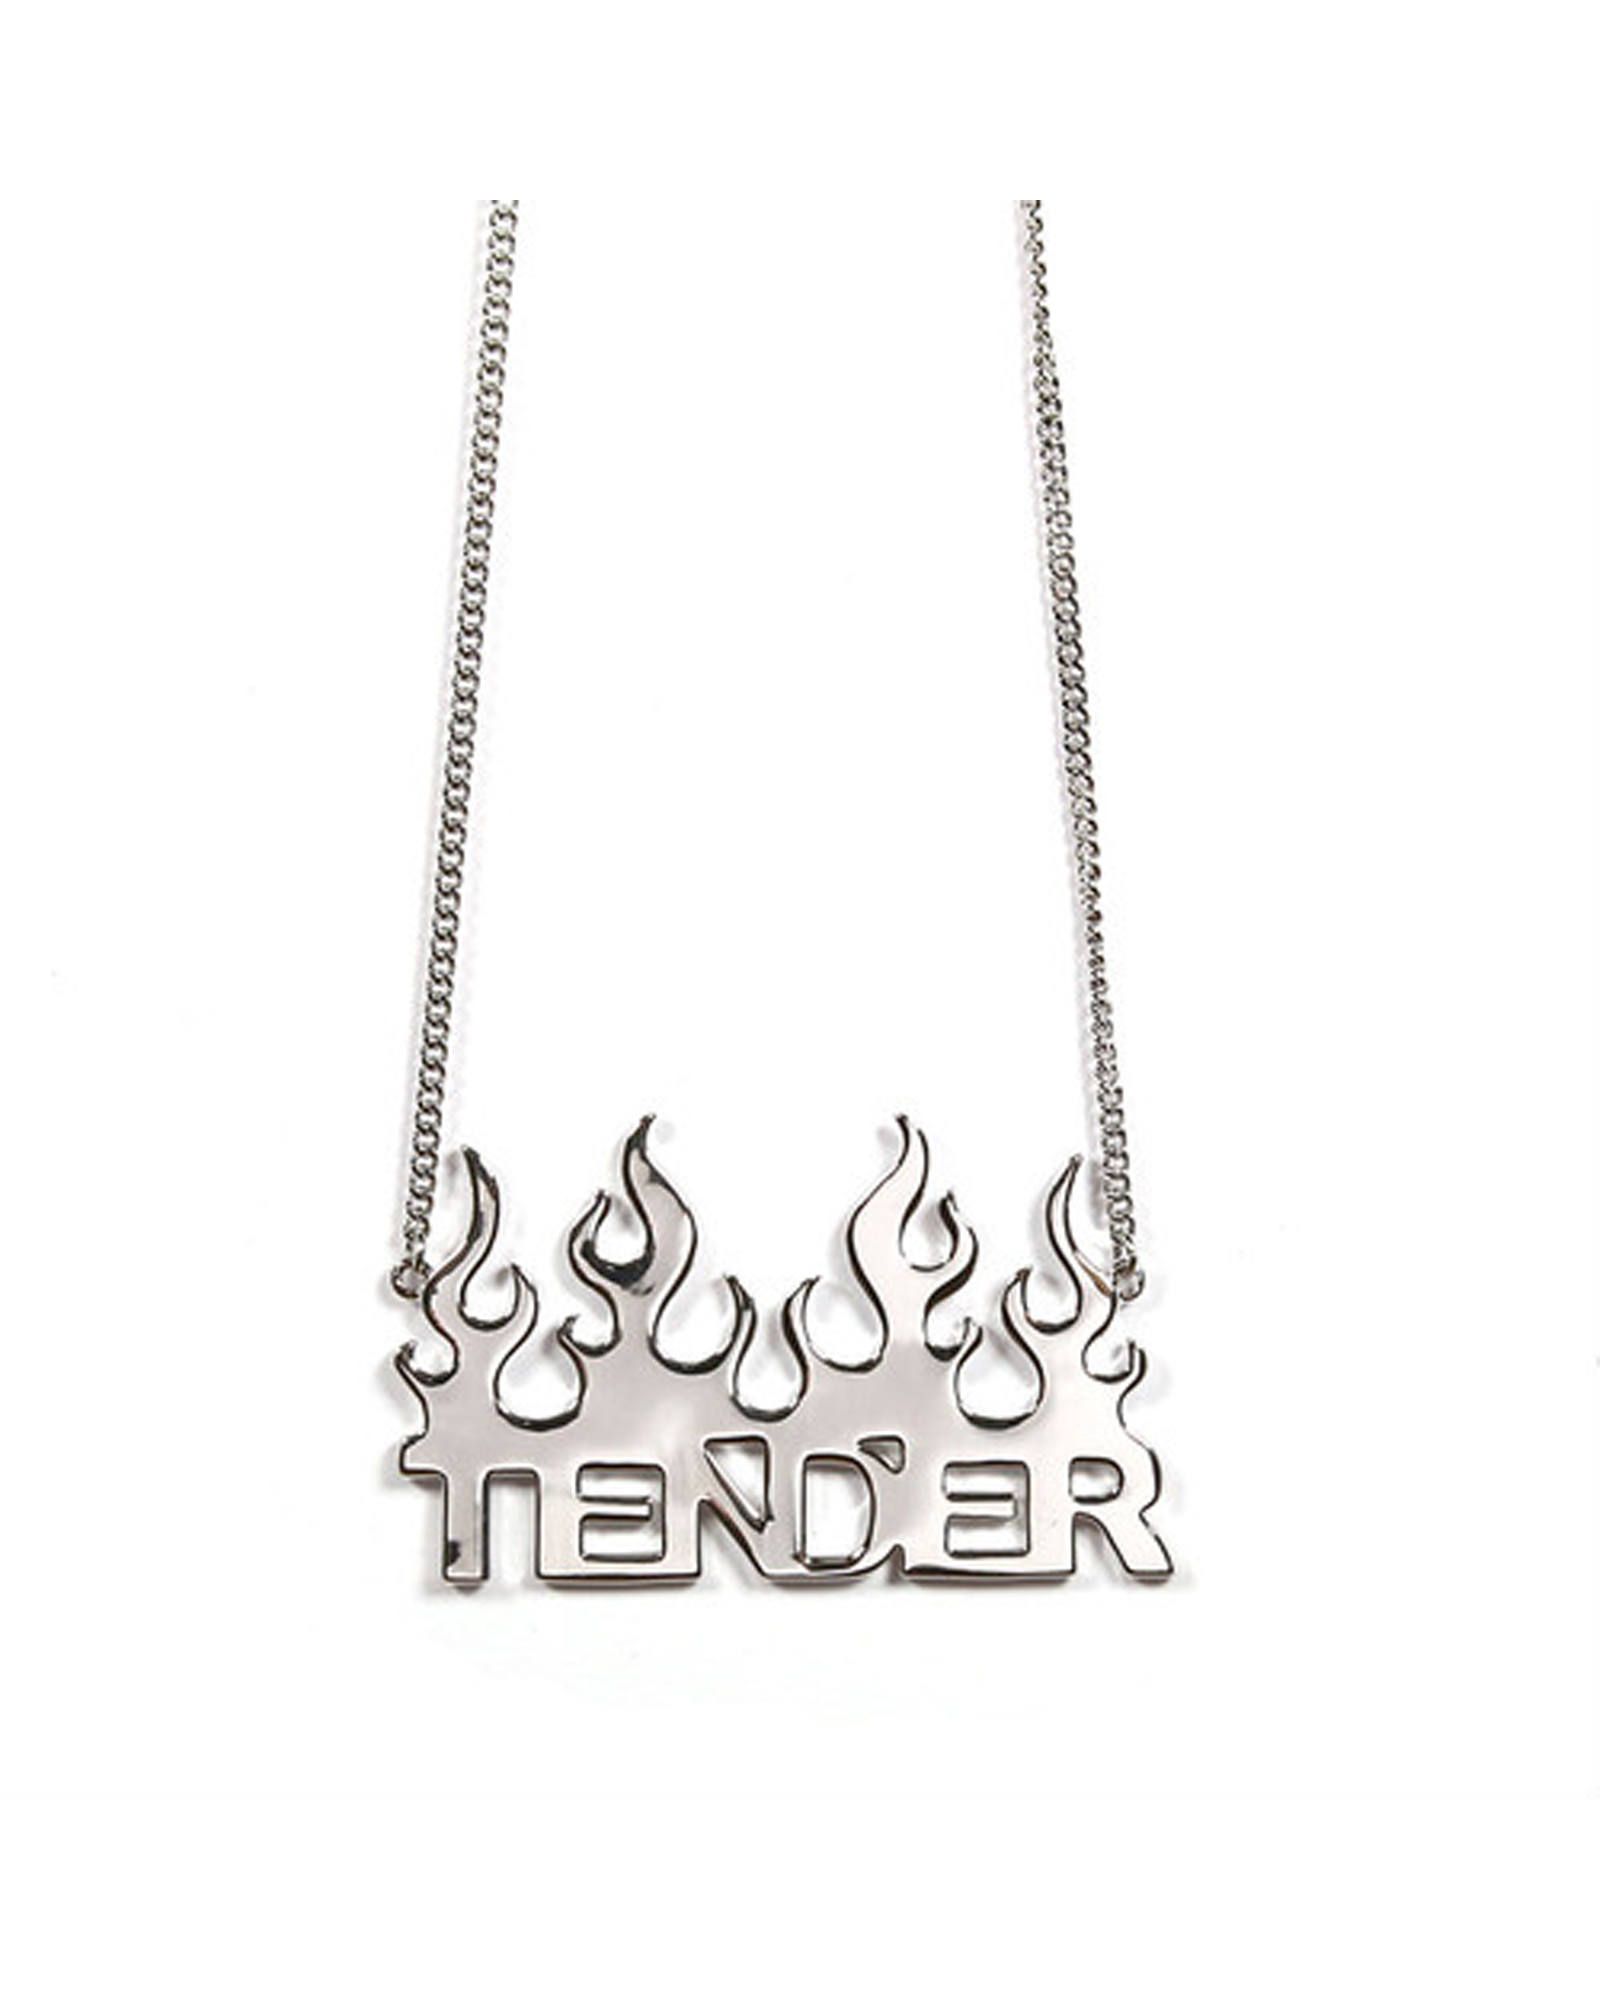 TENDER PERSON - Metal Emblem Chain | fakejam